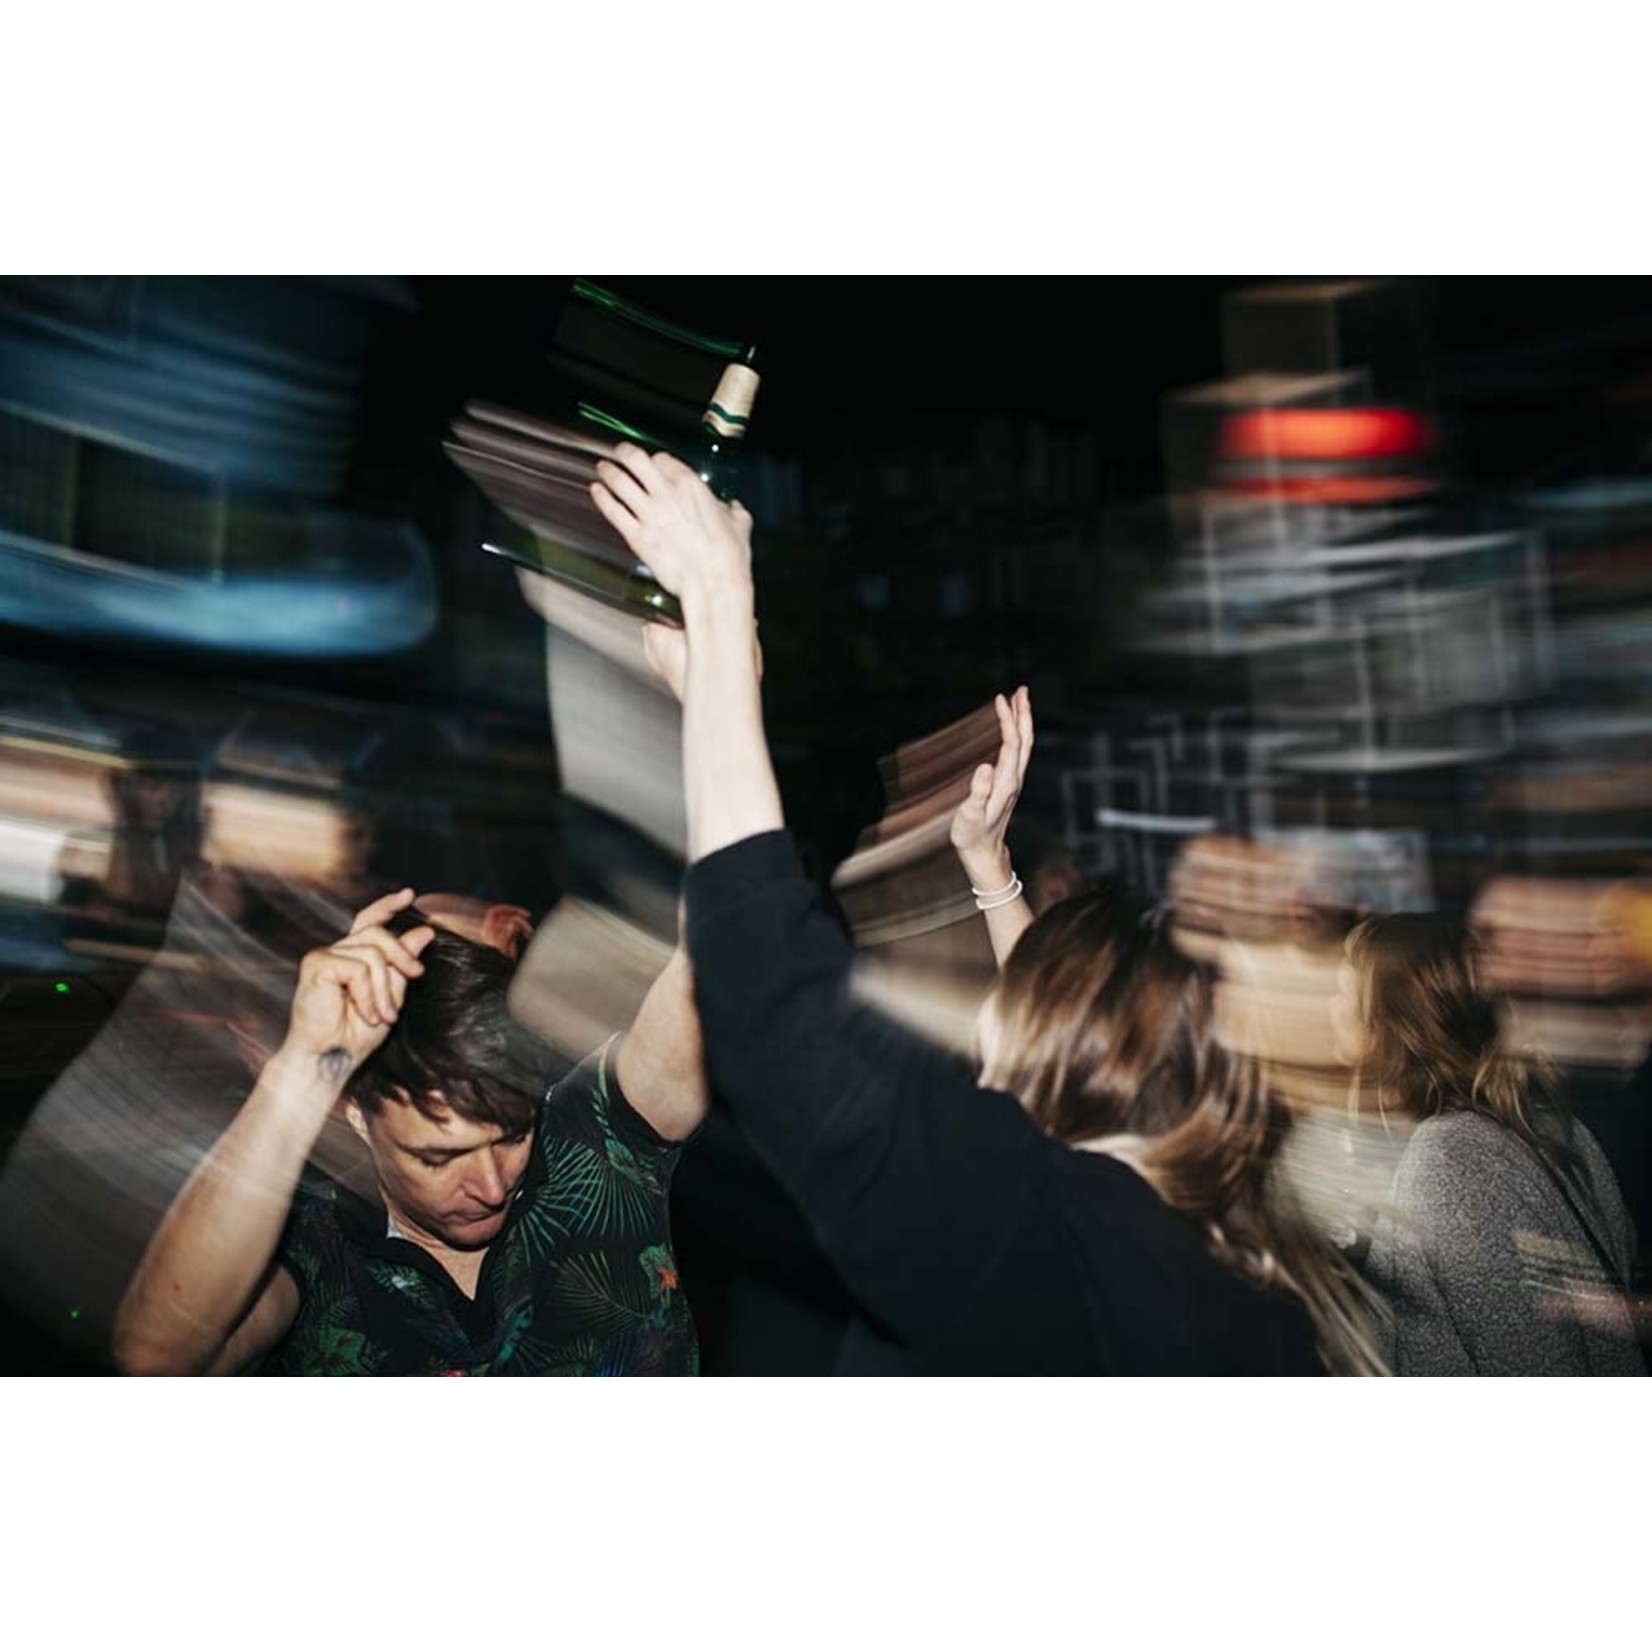 Getty Images Gallery Energetic Scene Of People On Dancefloor At Nightclub  Via Getty Images Gallery